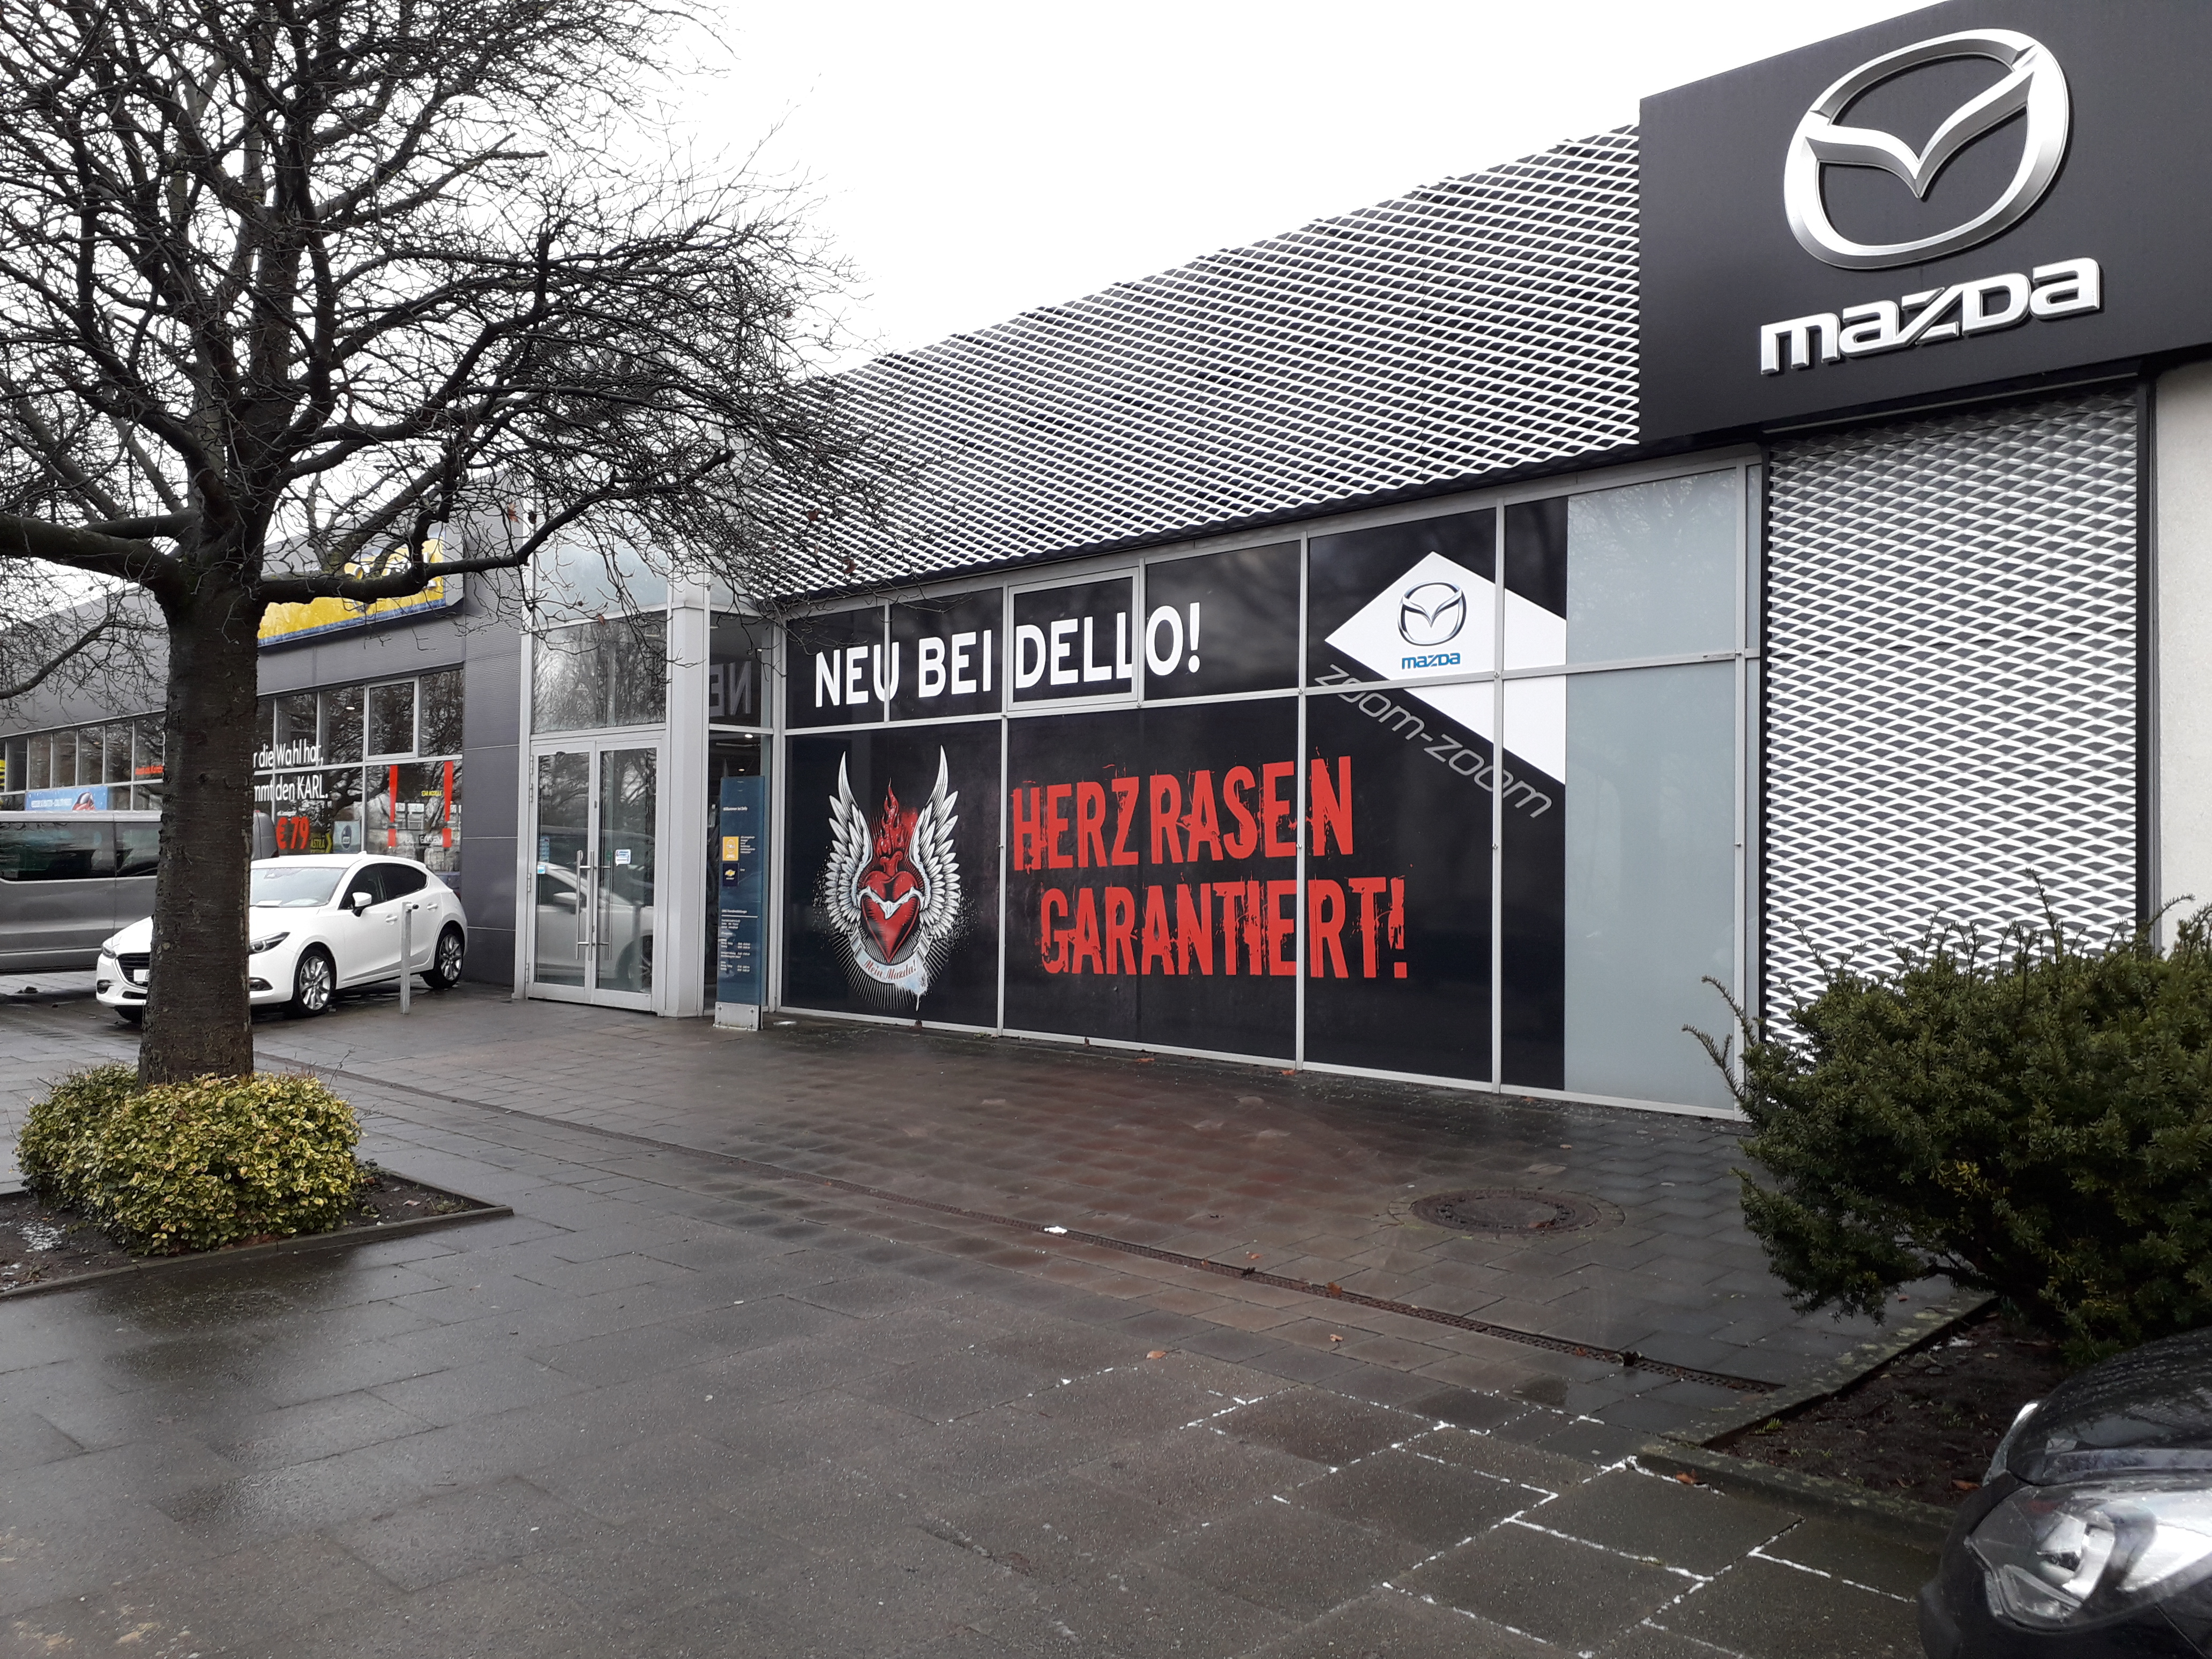 Bild 1 Dello Ernst GmbH & Co.KG Mehrmarken Vertragshändler Neuwagen Automobilverkauf in Hamburg